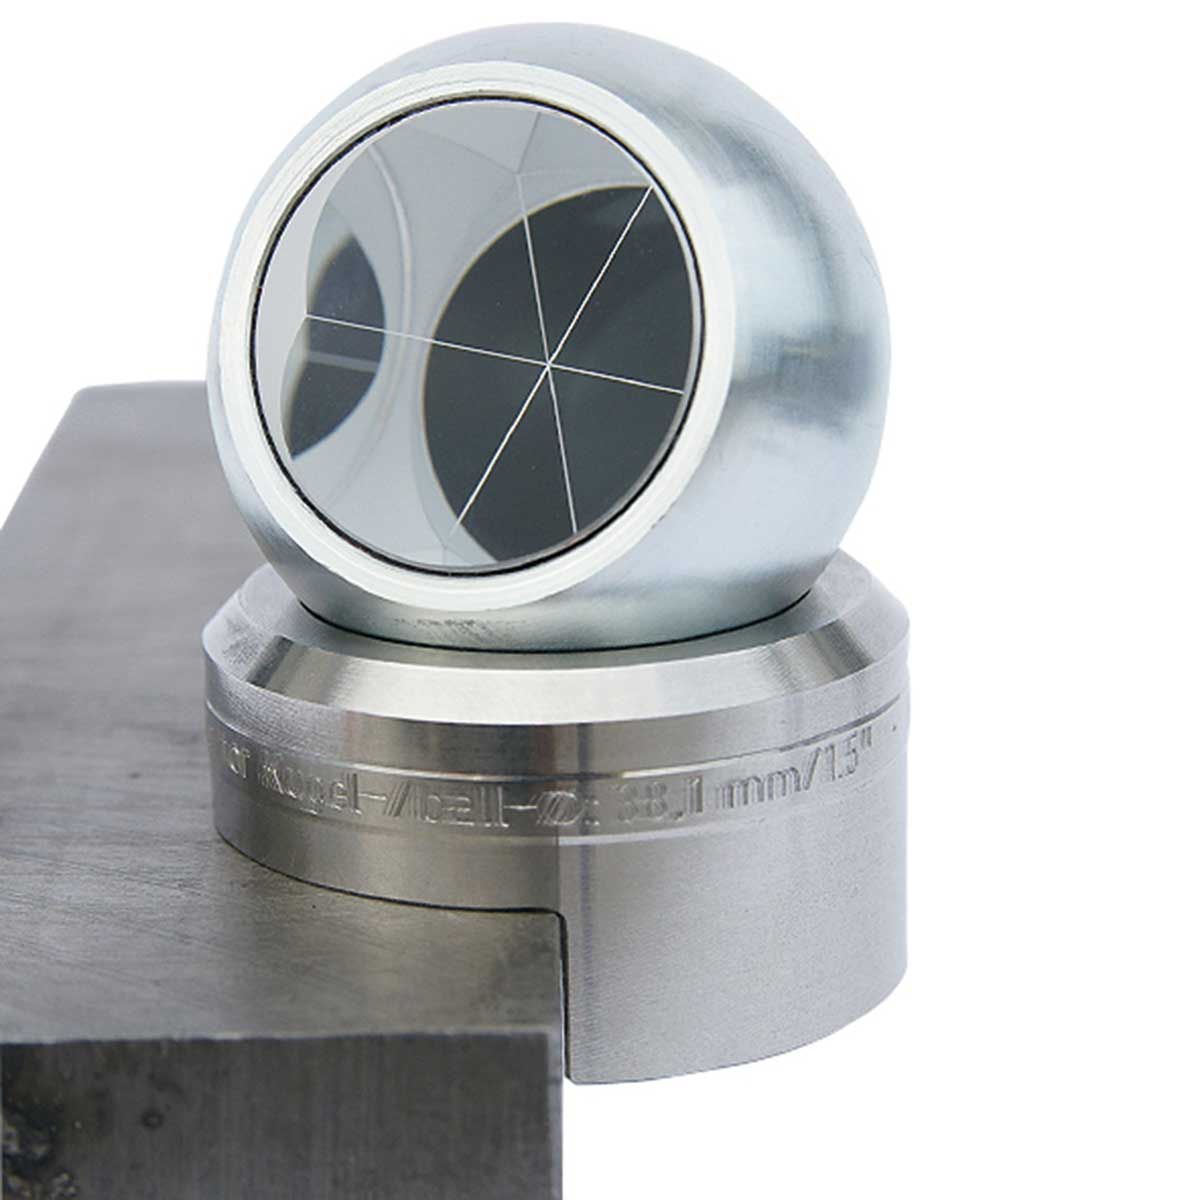 Kugel-Basis für Kanten Ø 1,5" (38.1 mm) mit Magnet, Höhenoffset: 25 mm